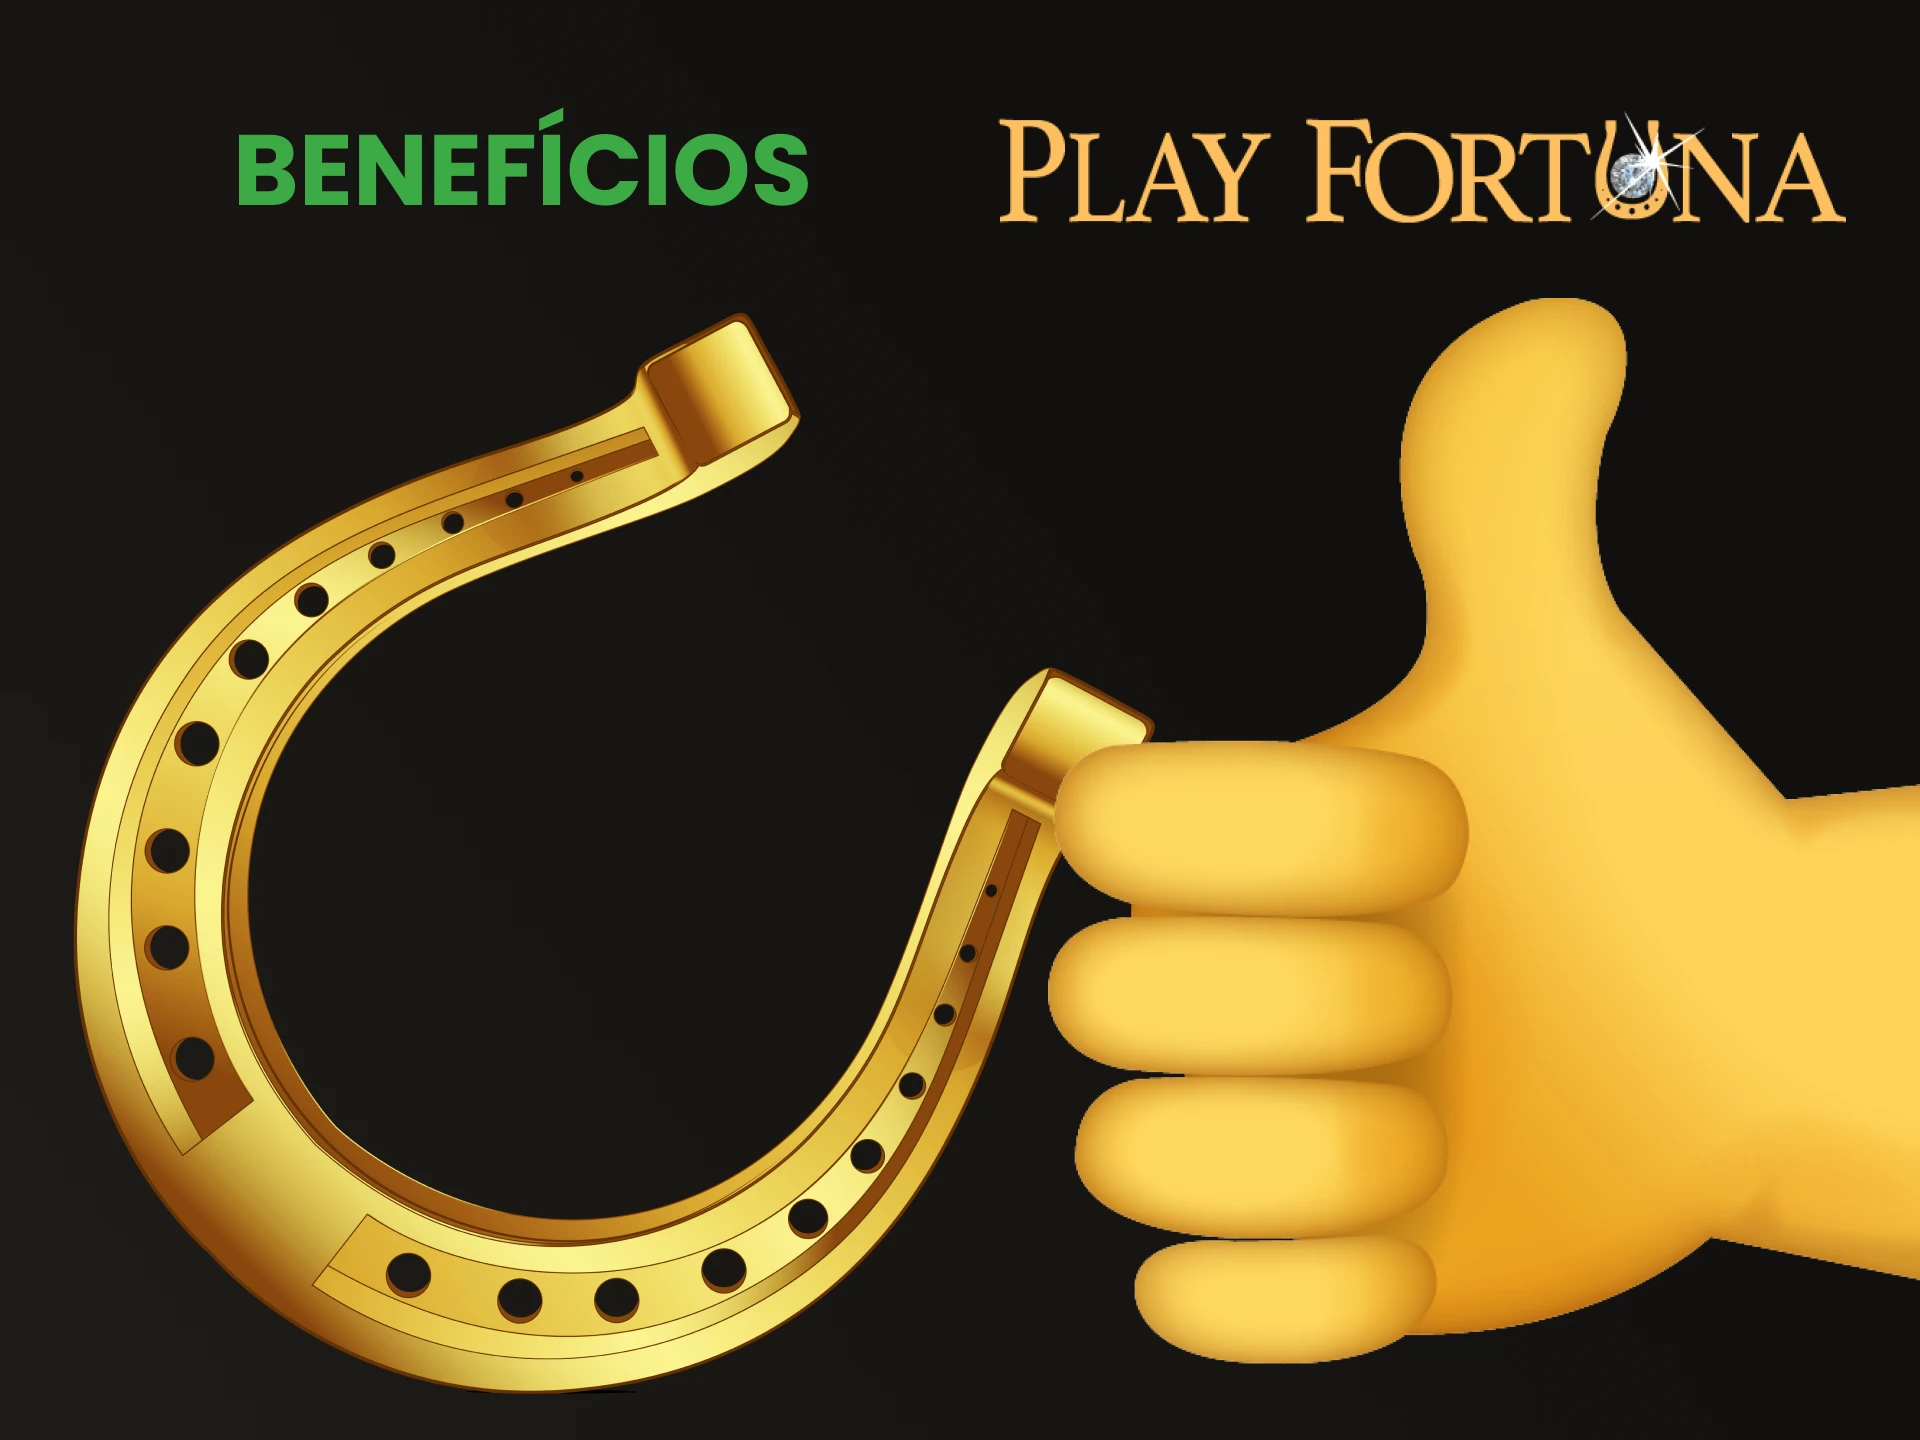 Falaremos sobre as vantagens do vídeo pôquer no Play Fortuna.